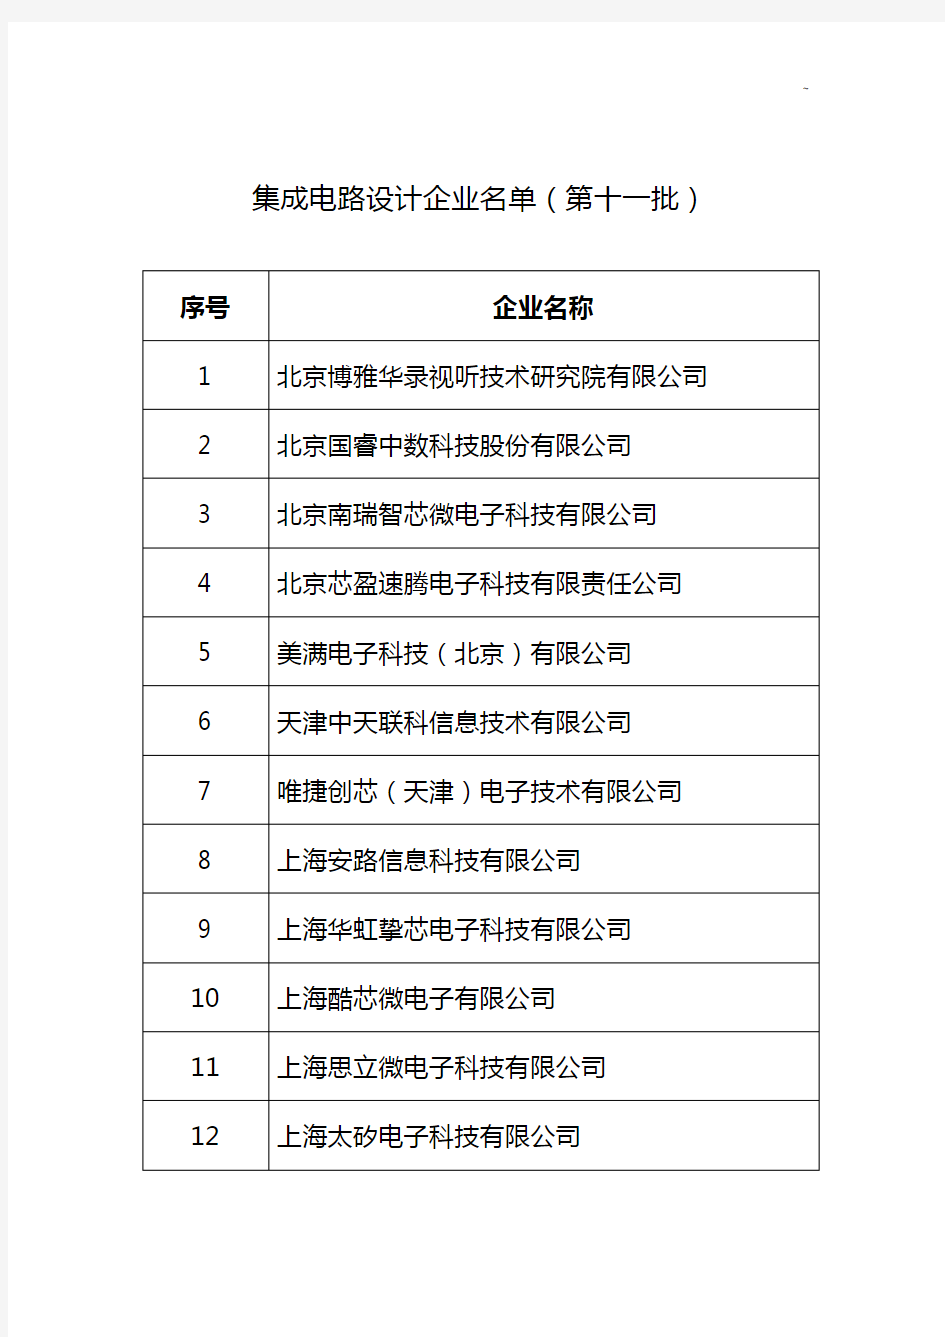 集成电路设计企业单位名单资料(第十一批)